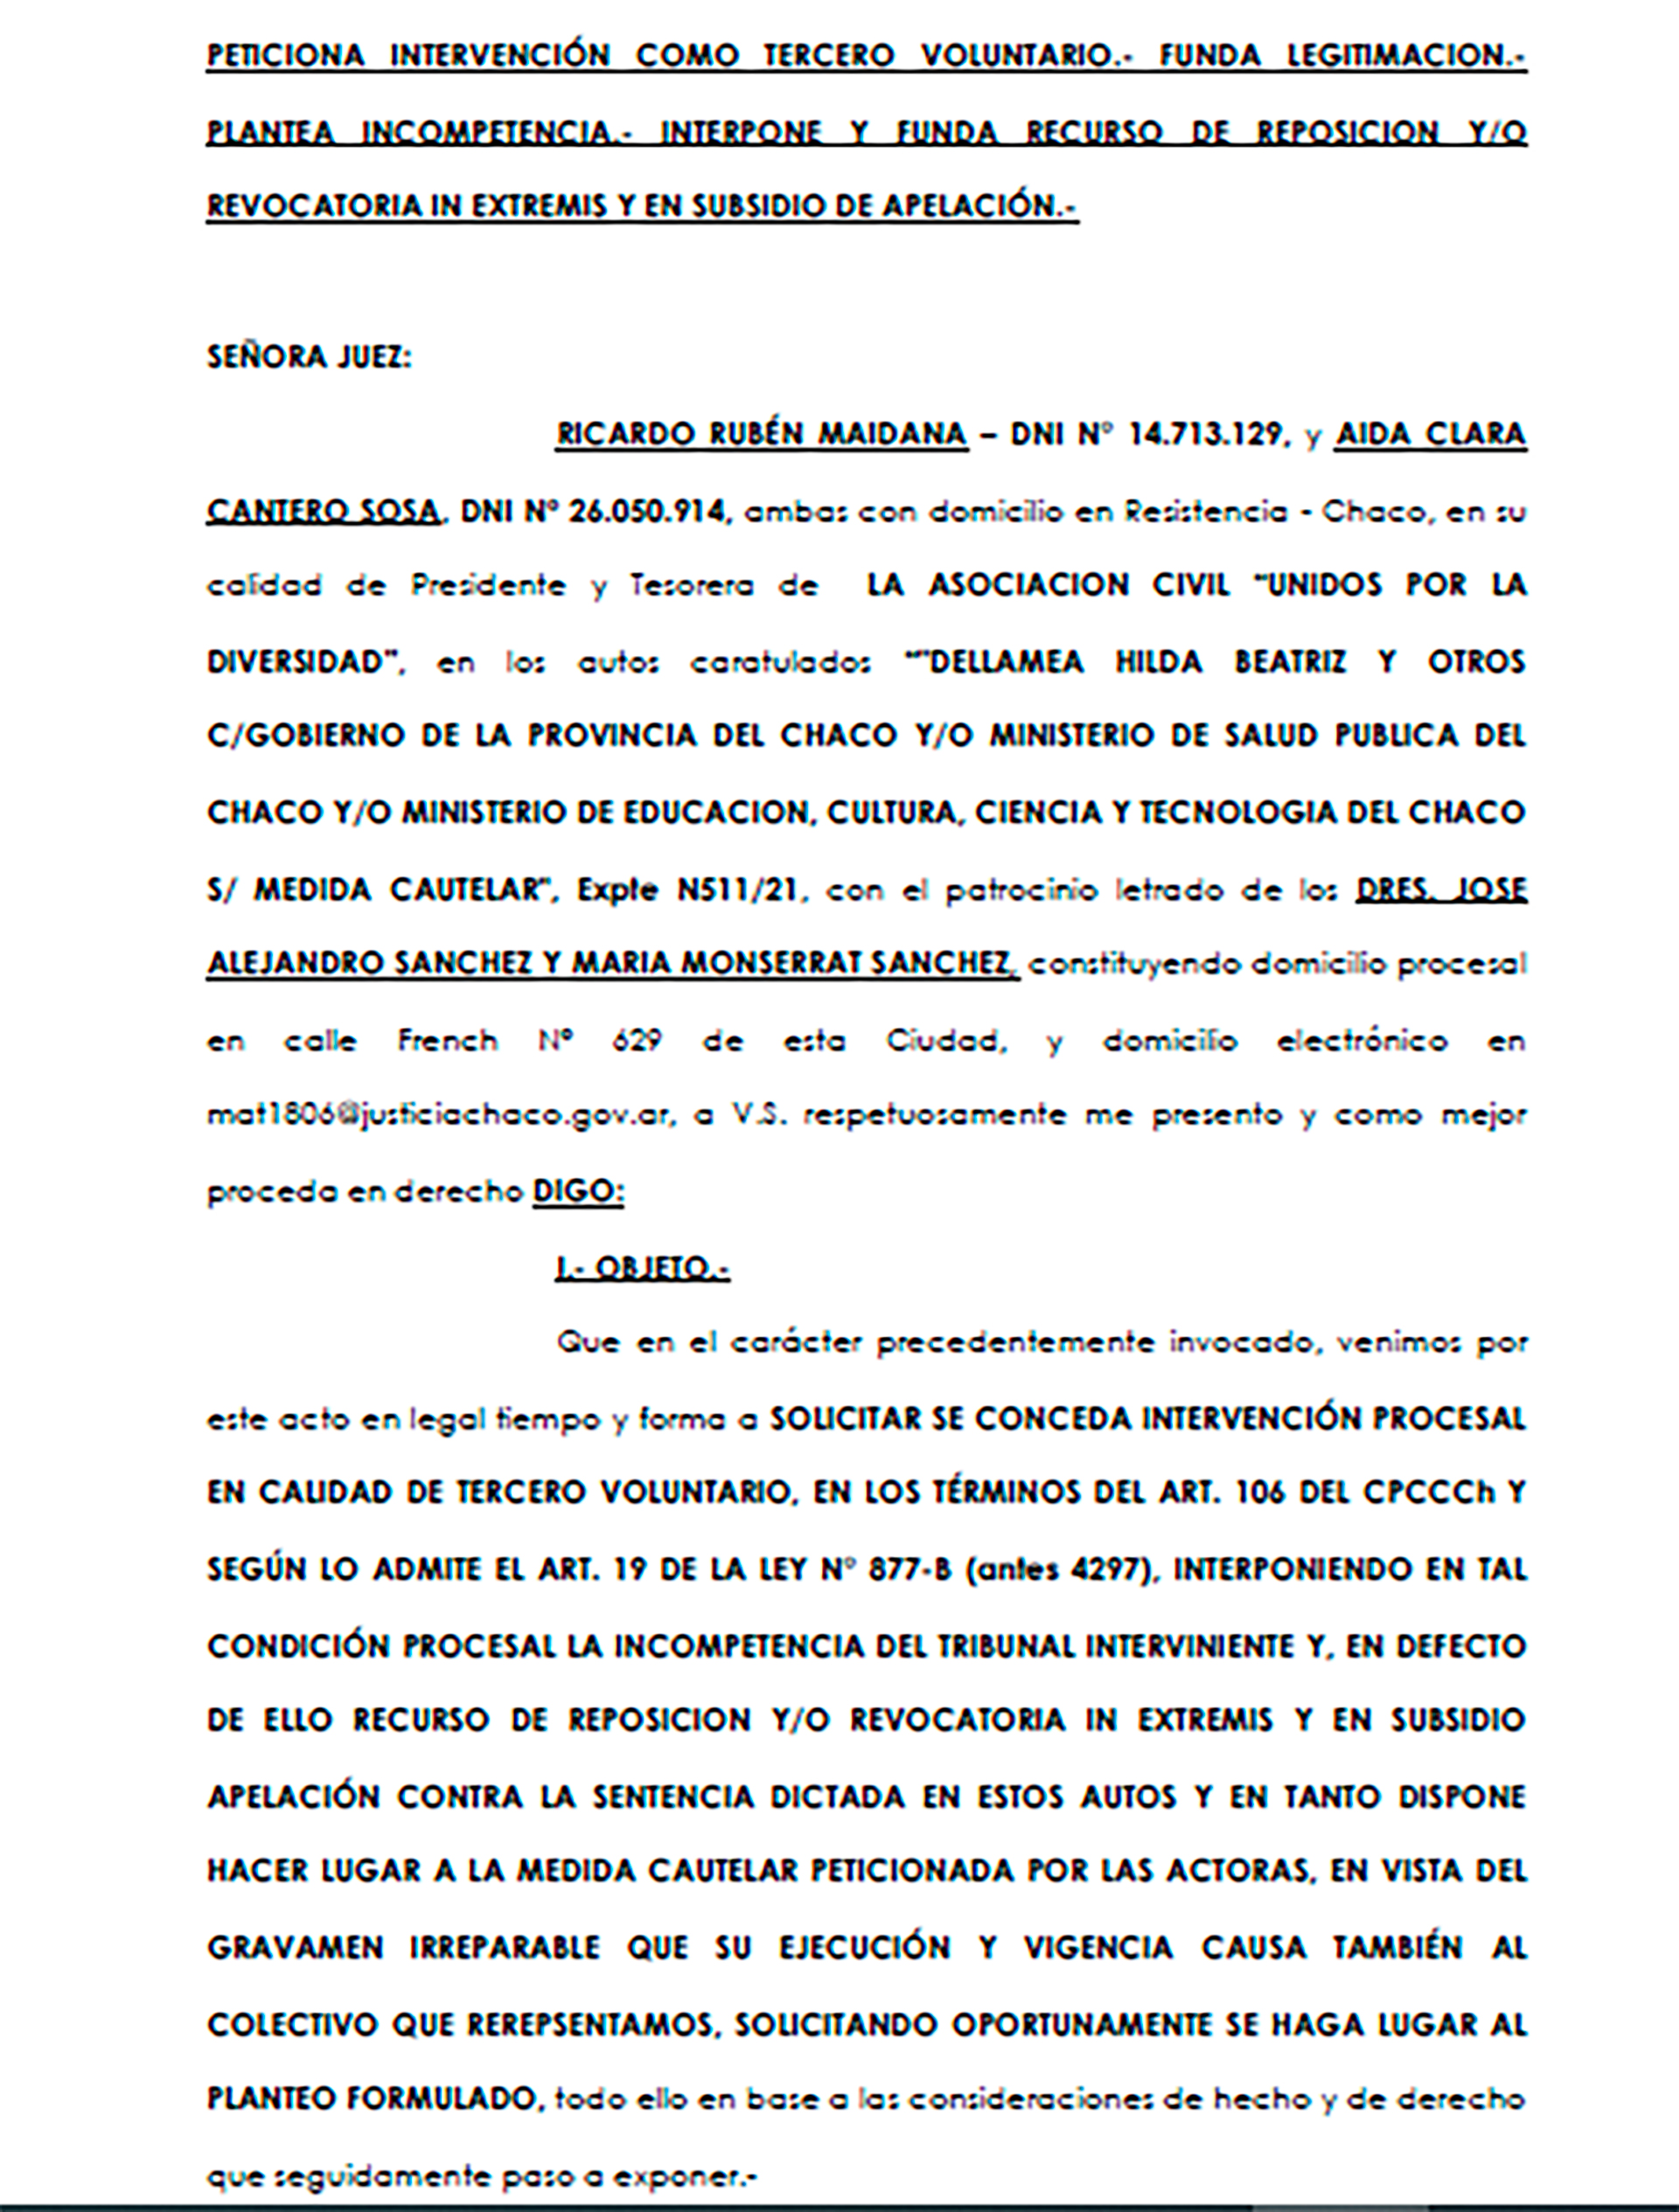 Apelación de la Sentencia de la jueza Marta Beatriz Aucar de Trotti contra la Ley de IVE en el Chaco